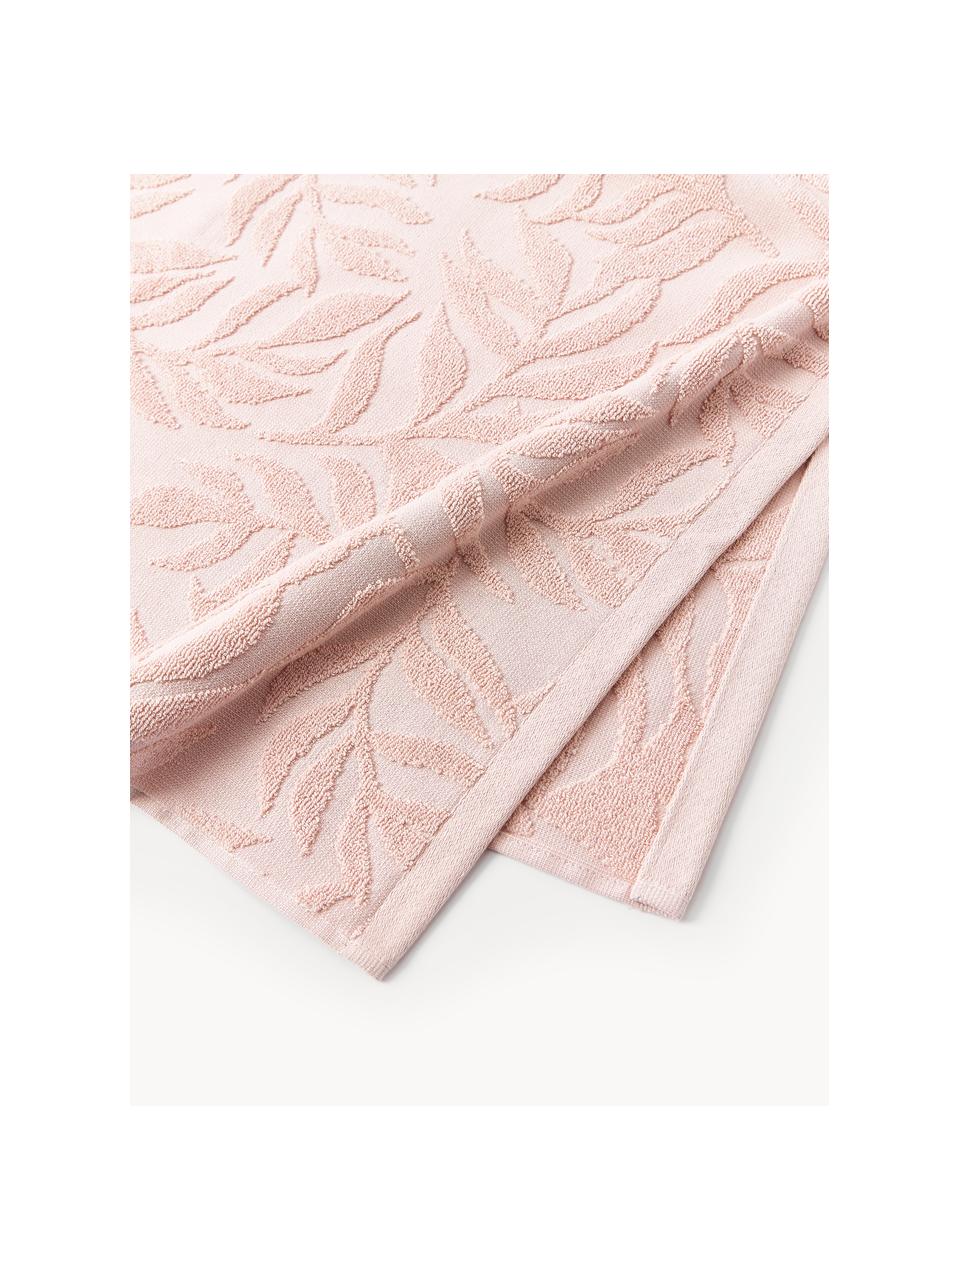 Lot de serviettes de bain en coton Leaf, tailles variées, Rose pâle, 3 éléments (1 serviette invité, 1 serviette de toilette et 1 drap de bain)